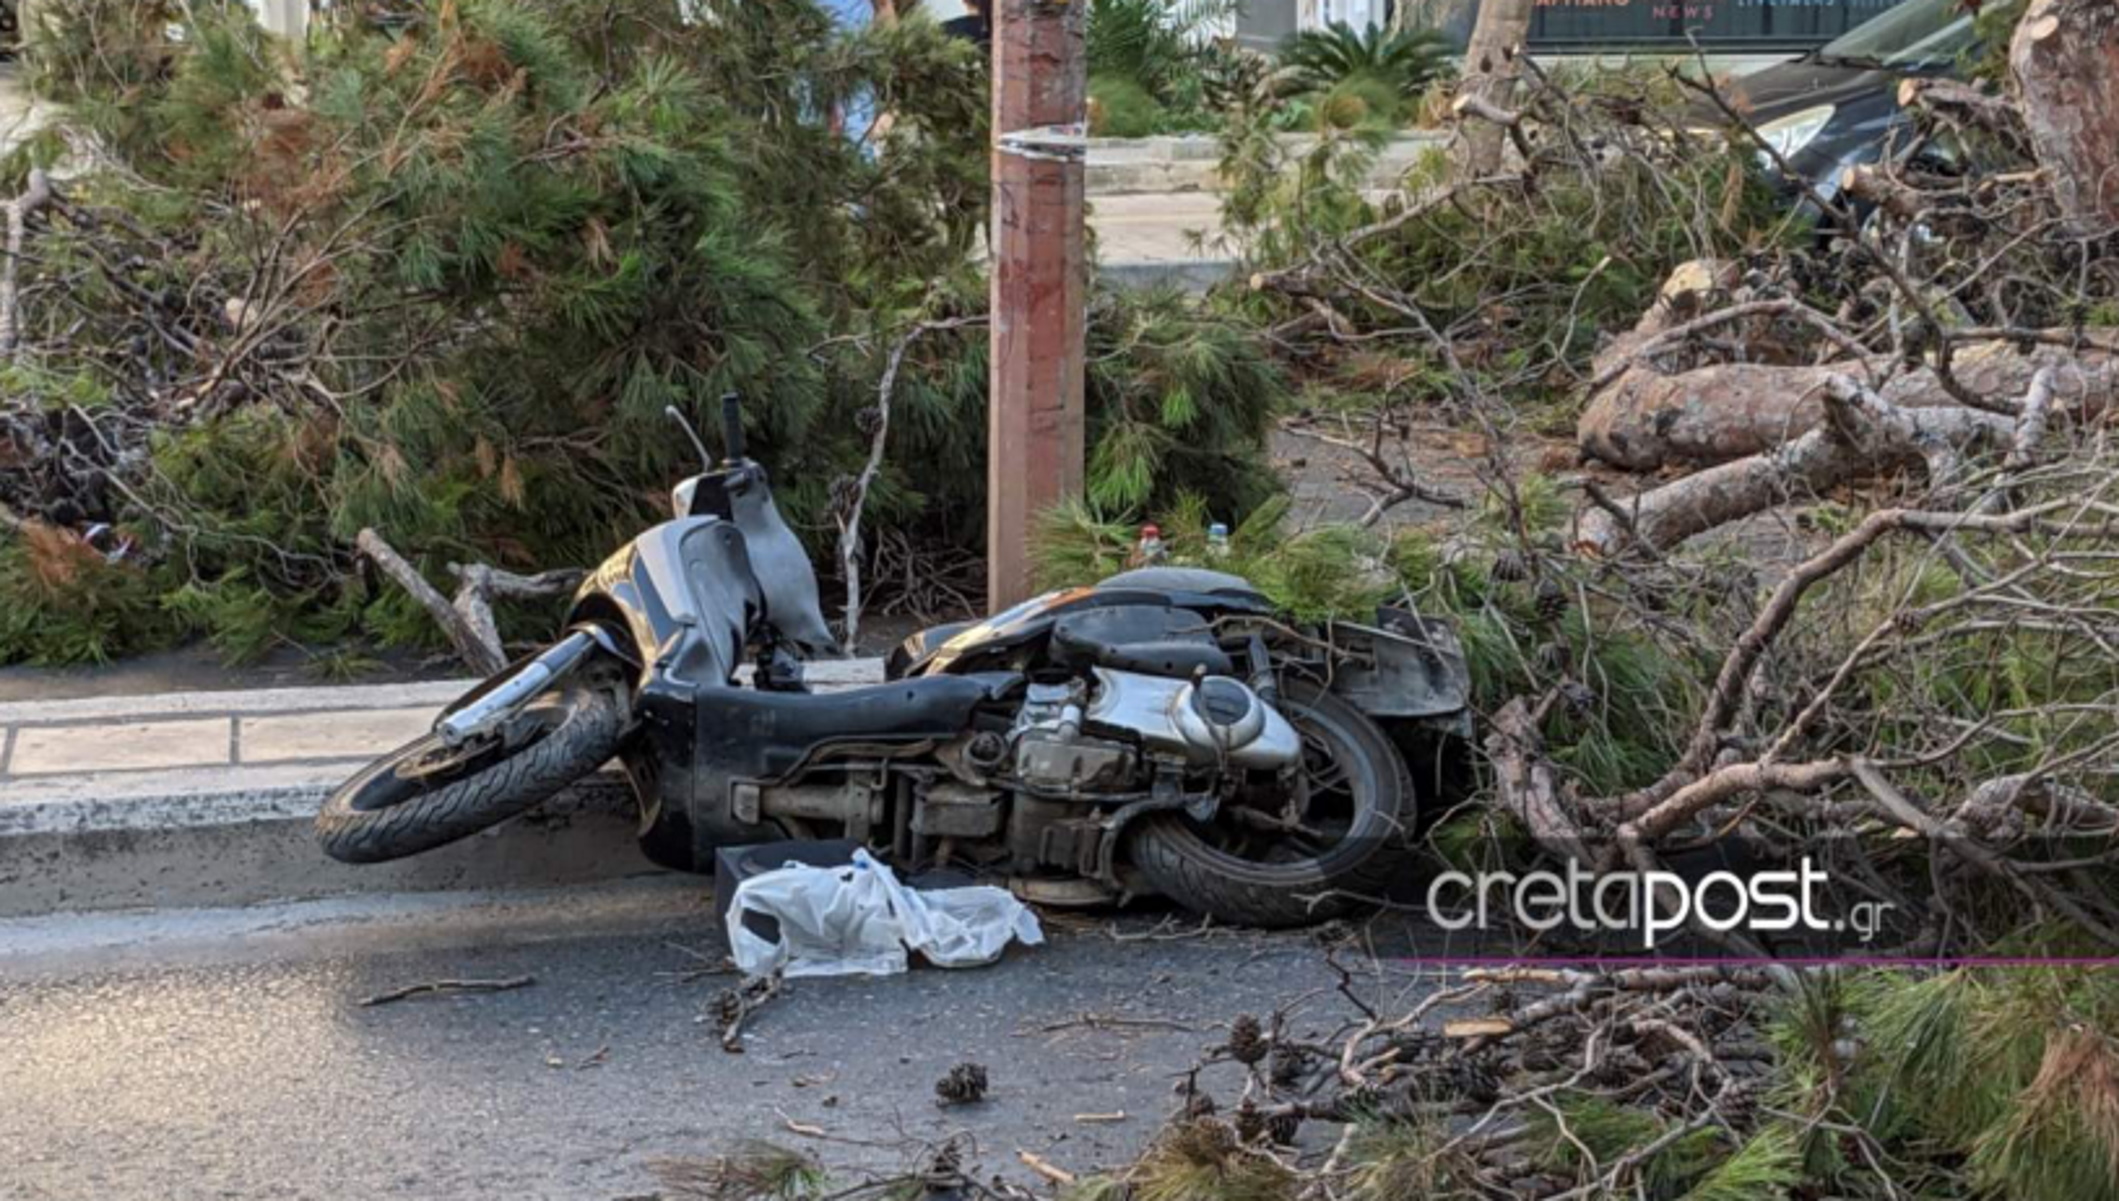 Κρήτη: Ελεύθερος ο Προϊστάμενος της Υπηρεσίας Πρασίνου μετά το τραγικό δυστύχημα